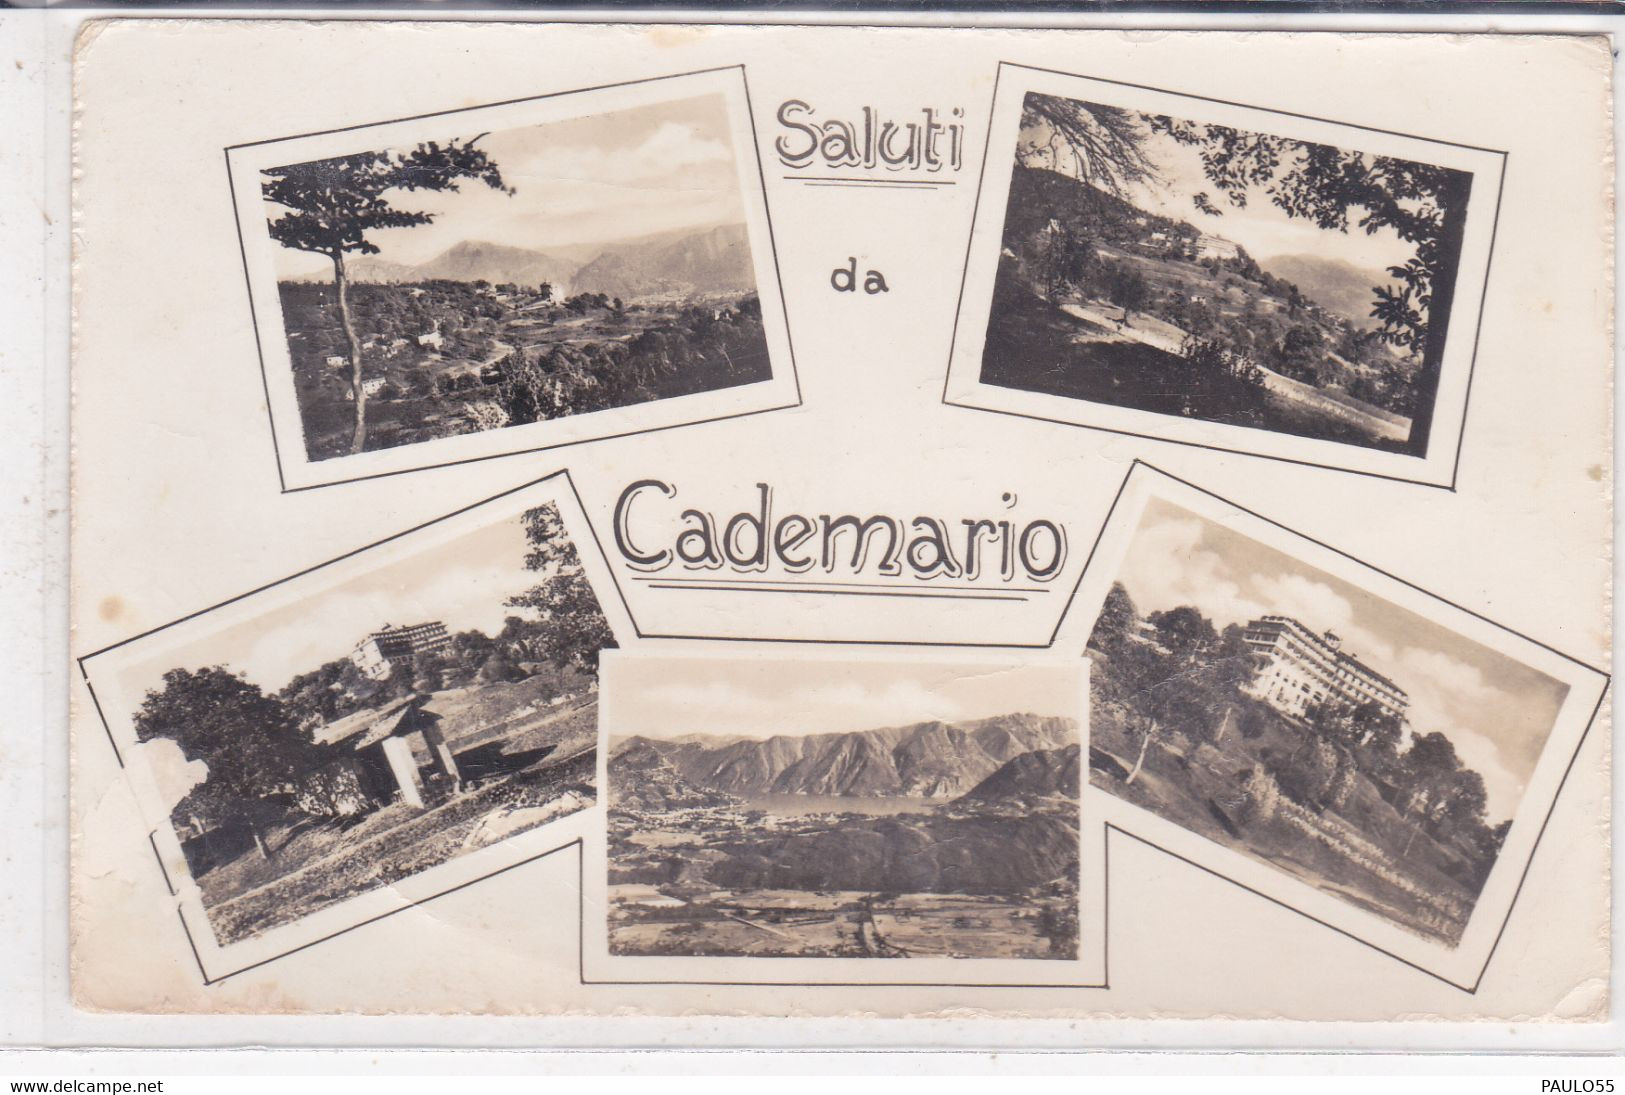 CADEMARIO - Cademario